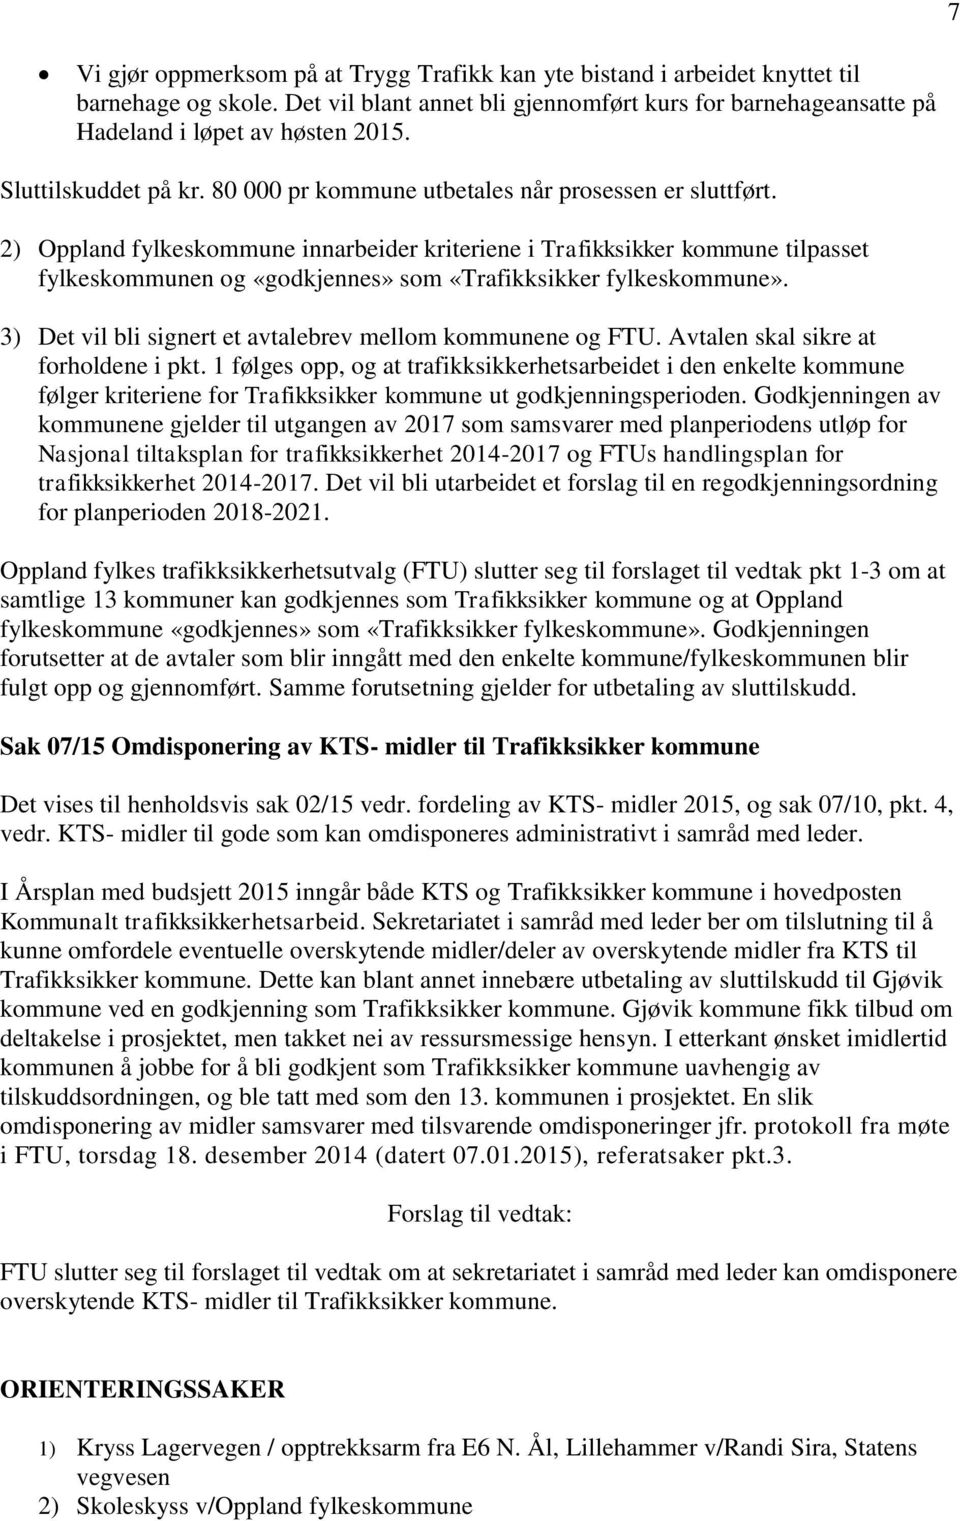 2) Oppland fylkeskommune innarbeider kriteriene i Trafikksikker kommune tilpasset fylkeskommunen og «godkjennes» som «Trafikksikker fylkeskommune».